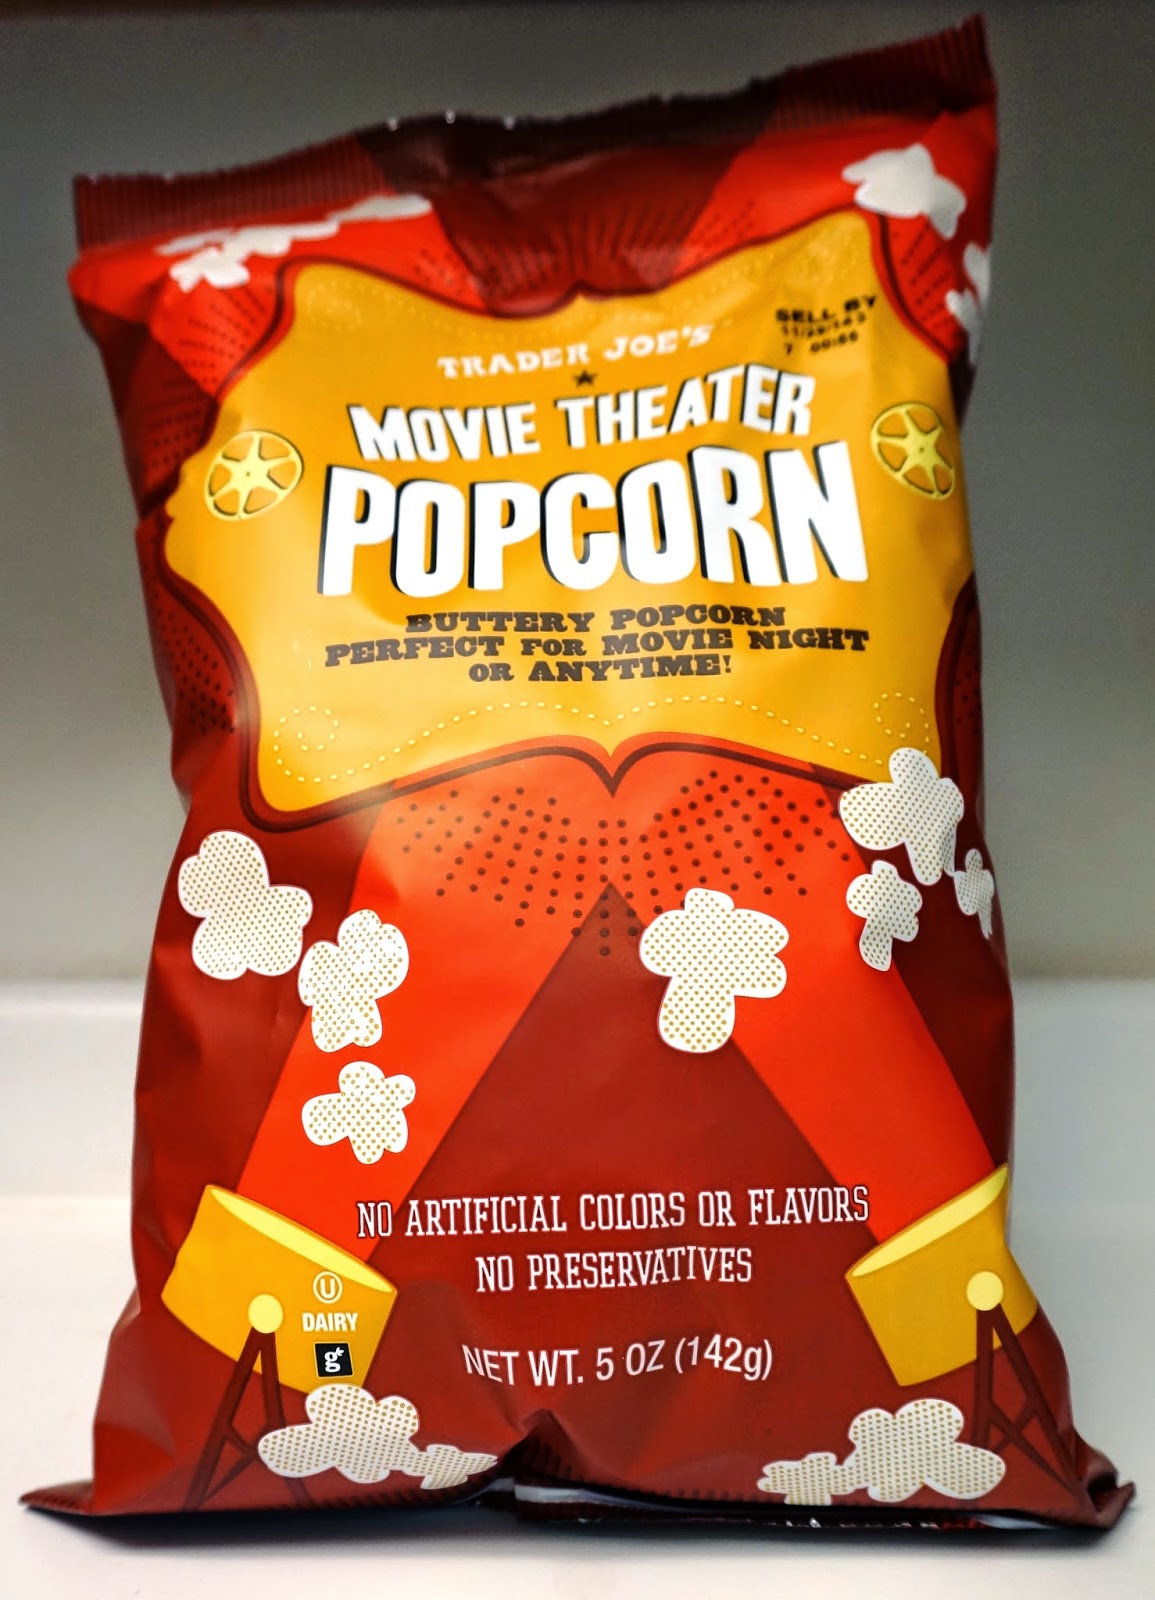 Exploring Trader Joe's: Trader Joe's Movie Theater Popcorn